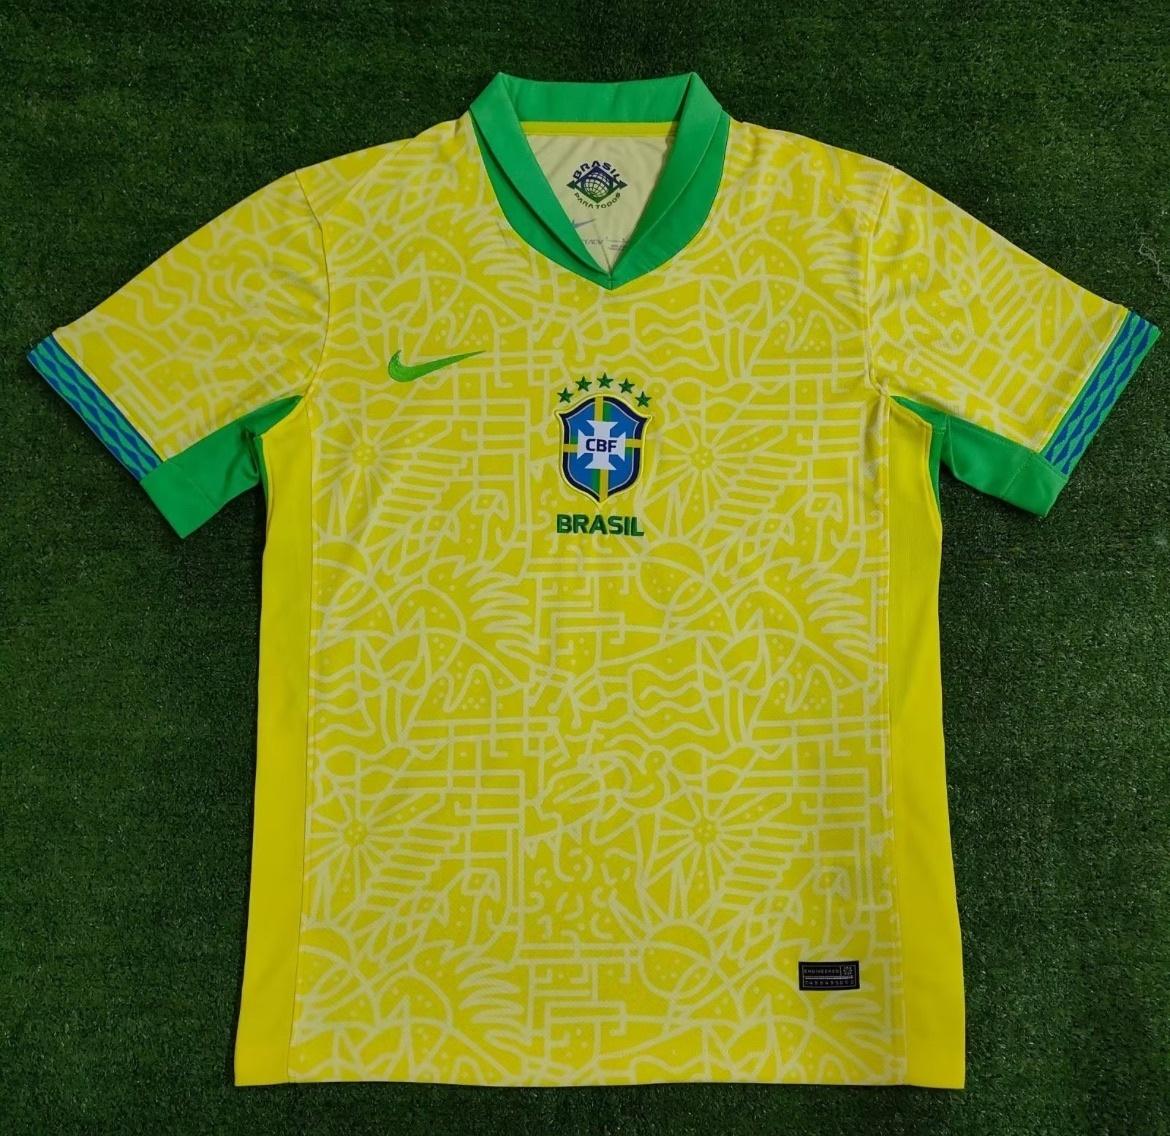 Nike lança primeiro uniforme com seleção brasileira de futsal